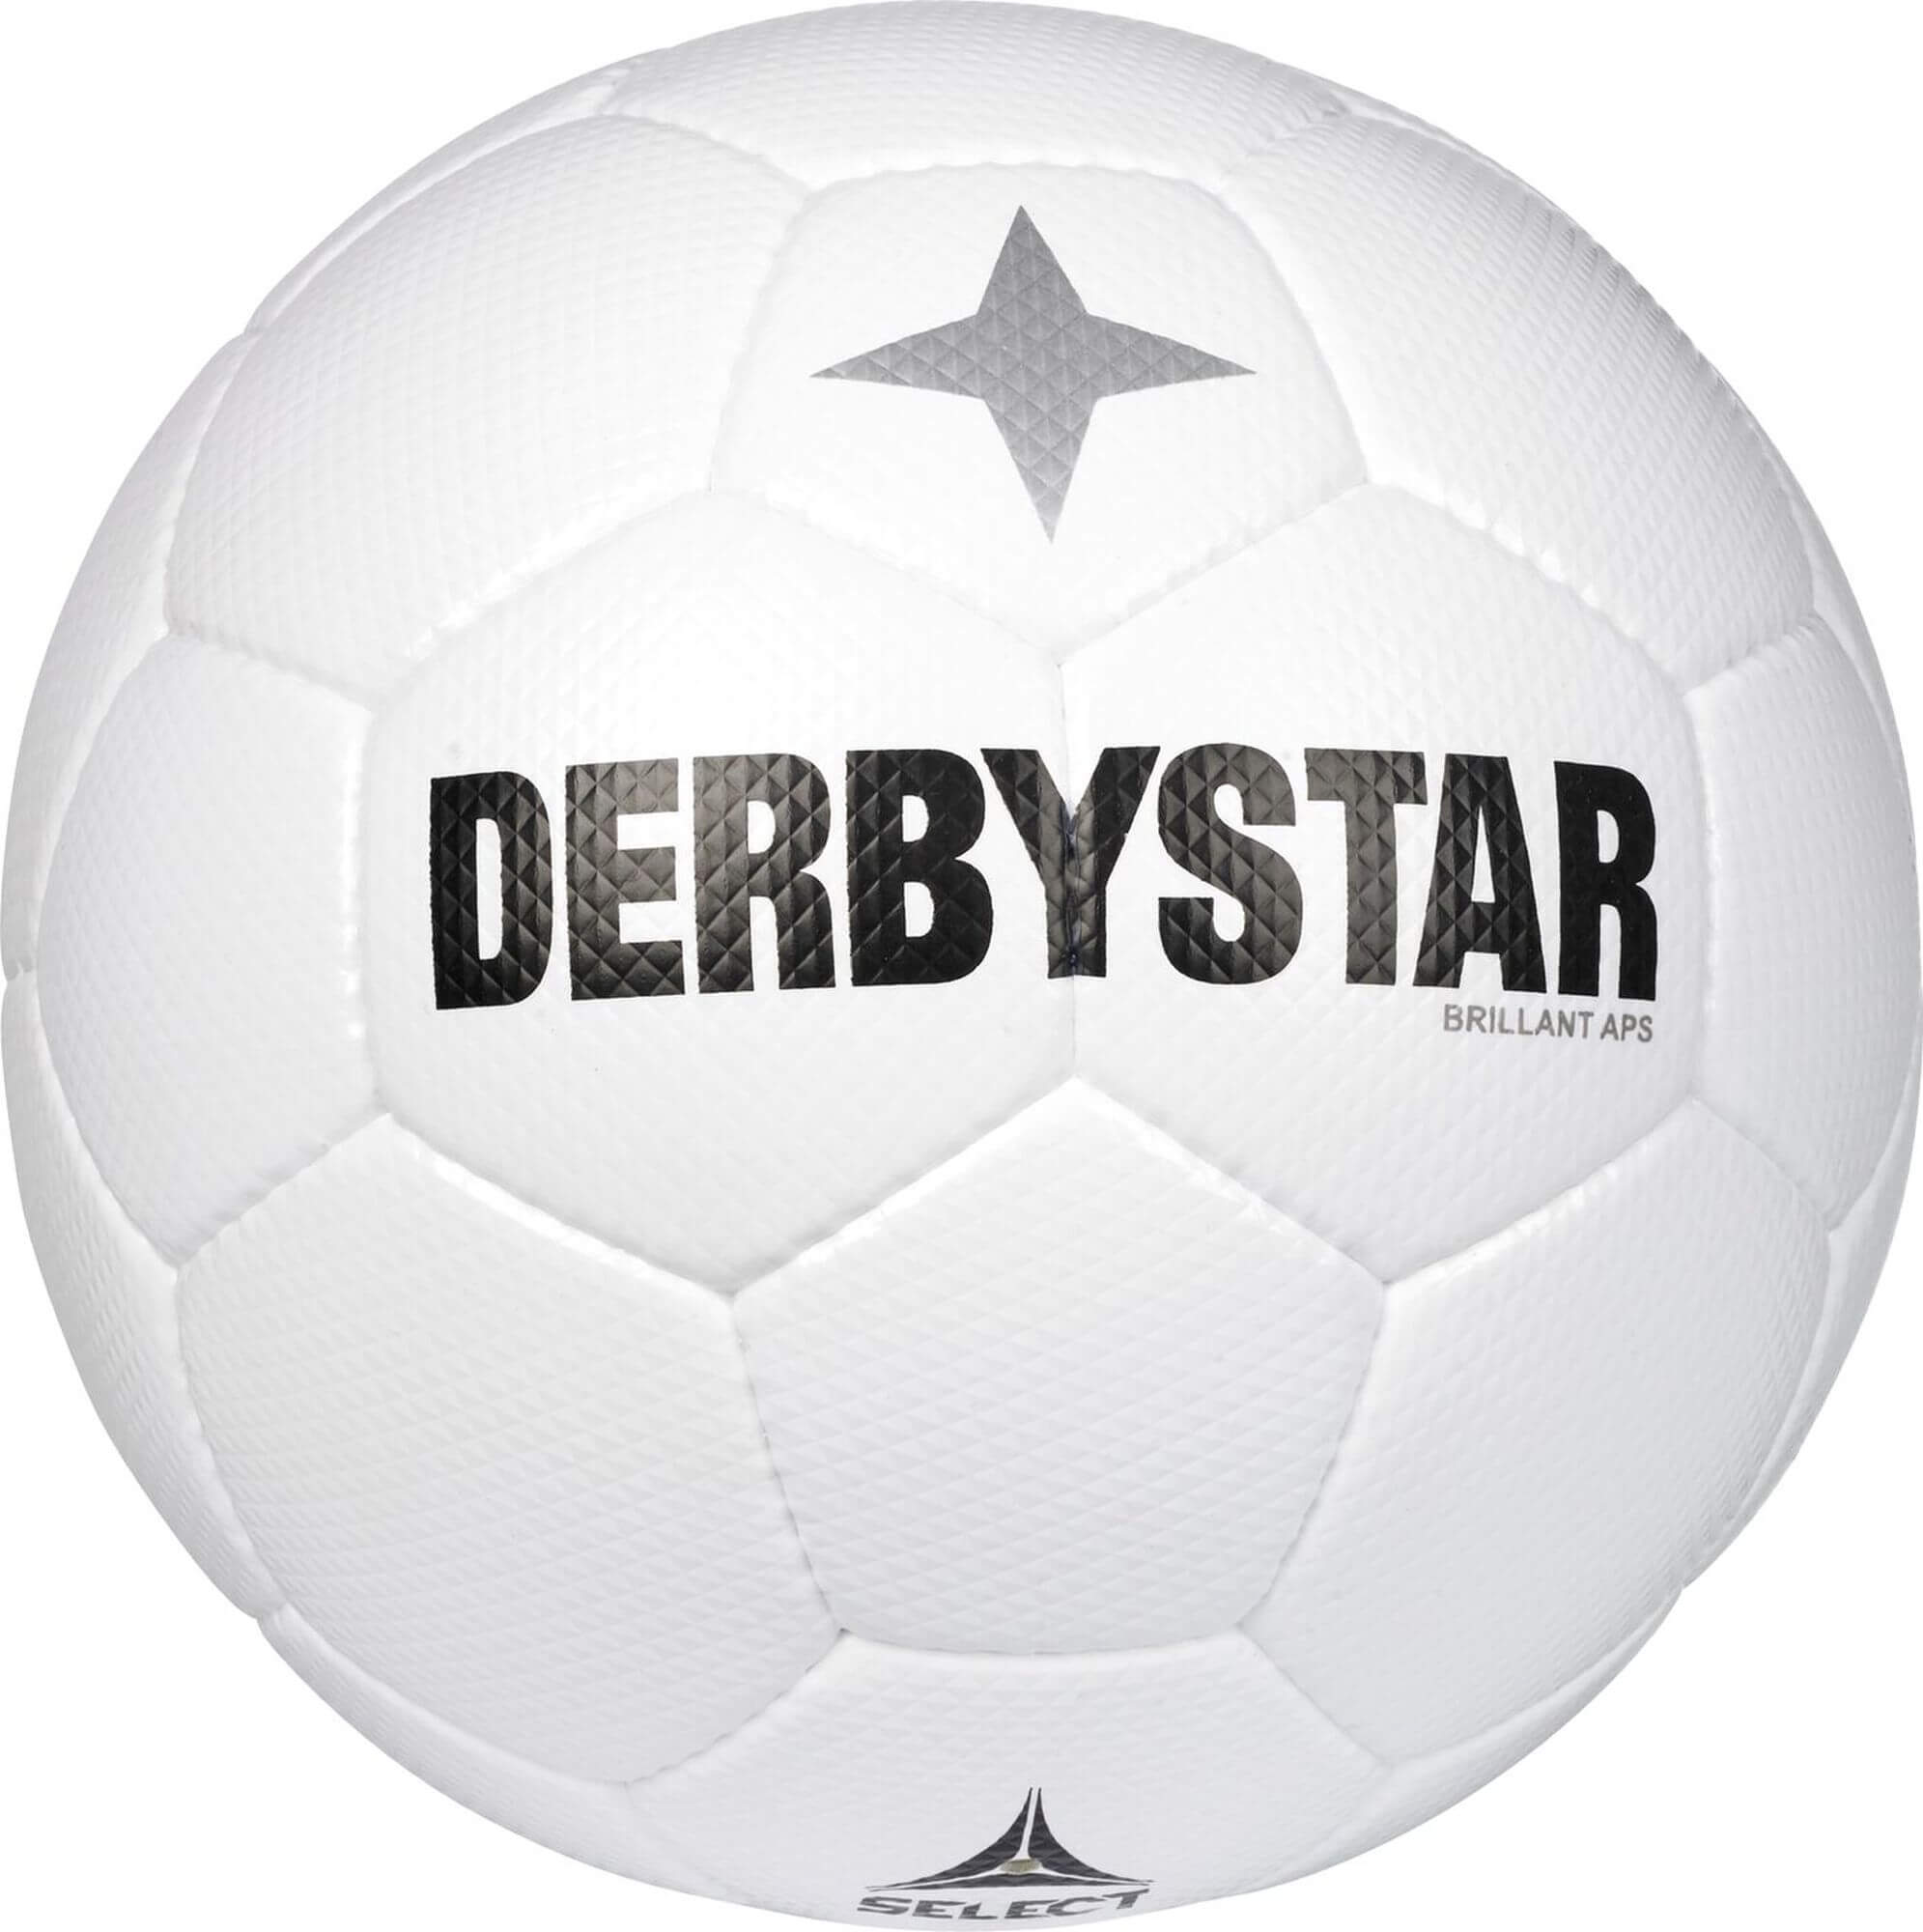 Derbystar Spiellball BRILLANT APS CLASSIC v22